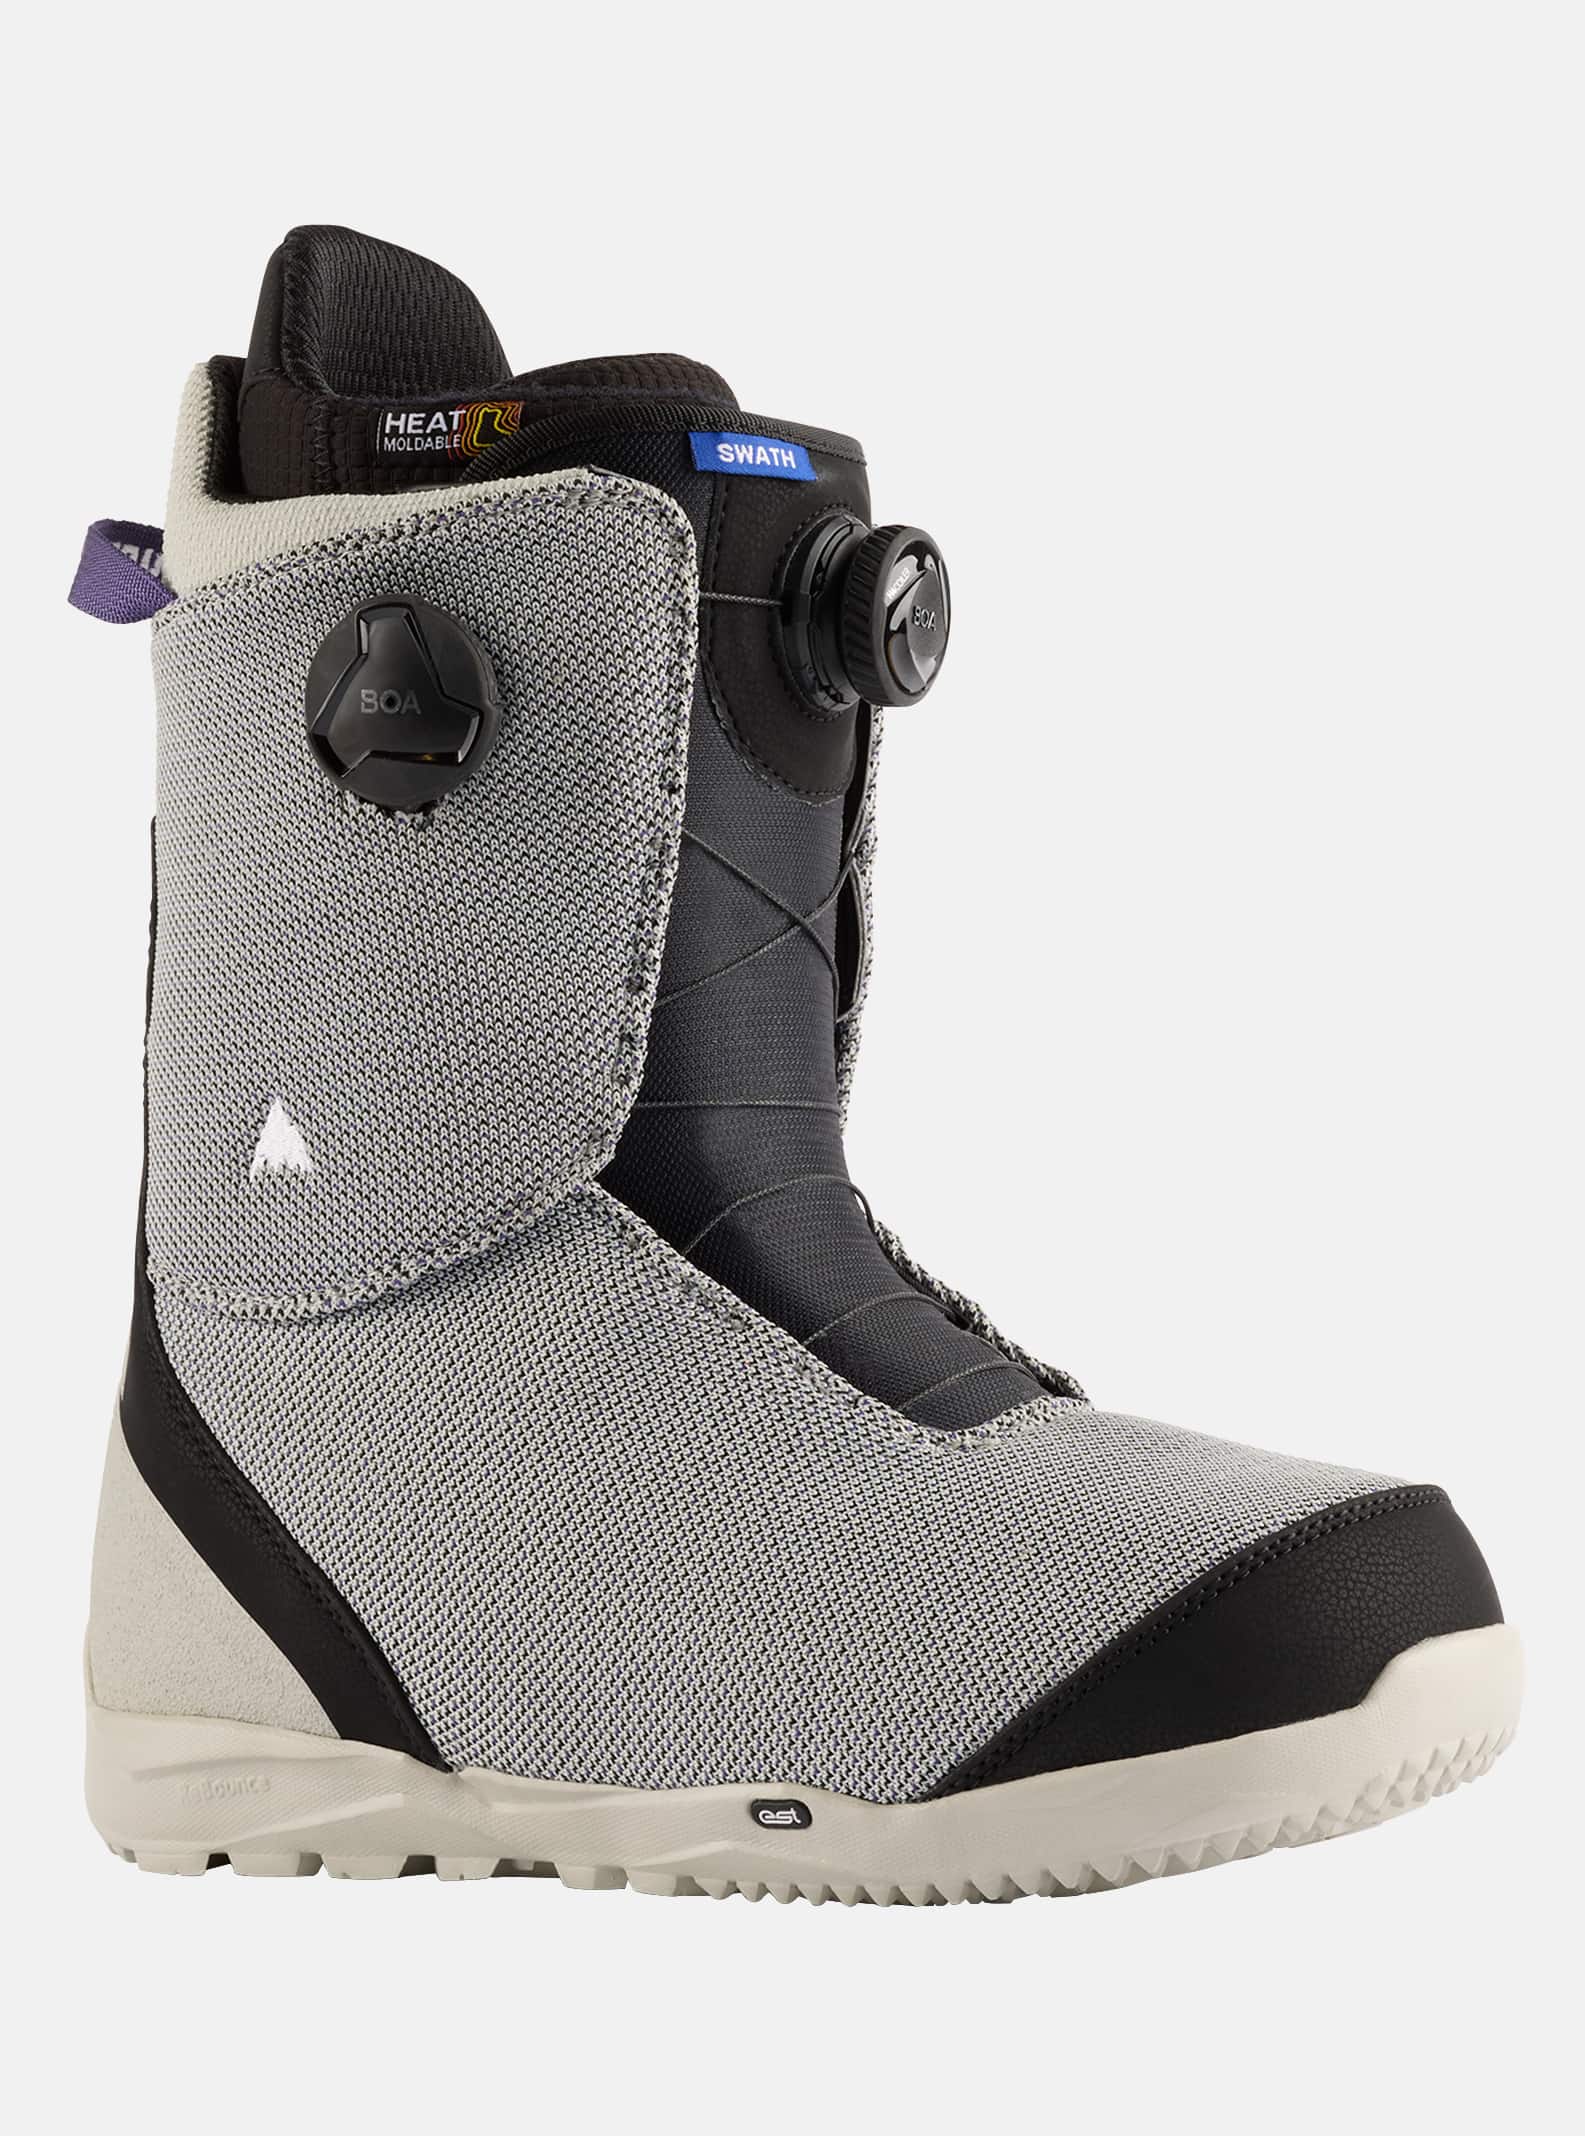 Burton - Boots de snowboard Swath BOA® homme, Gray / Multi, 10